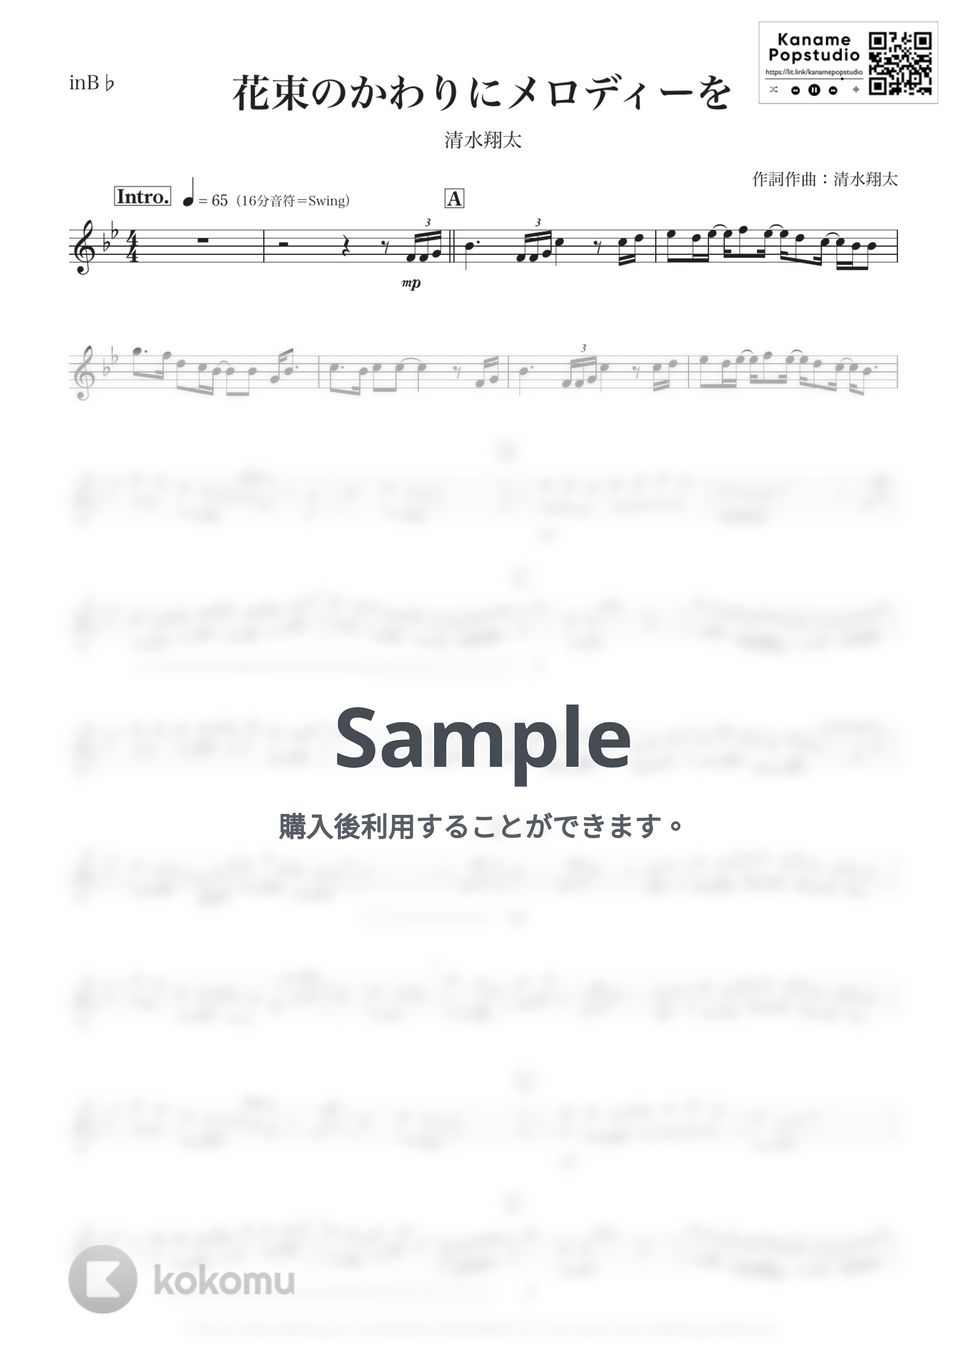 清水翔太 - 花束のかわりにメロディーを (B♭) by Kaname@Popstudio